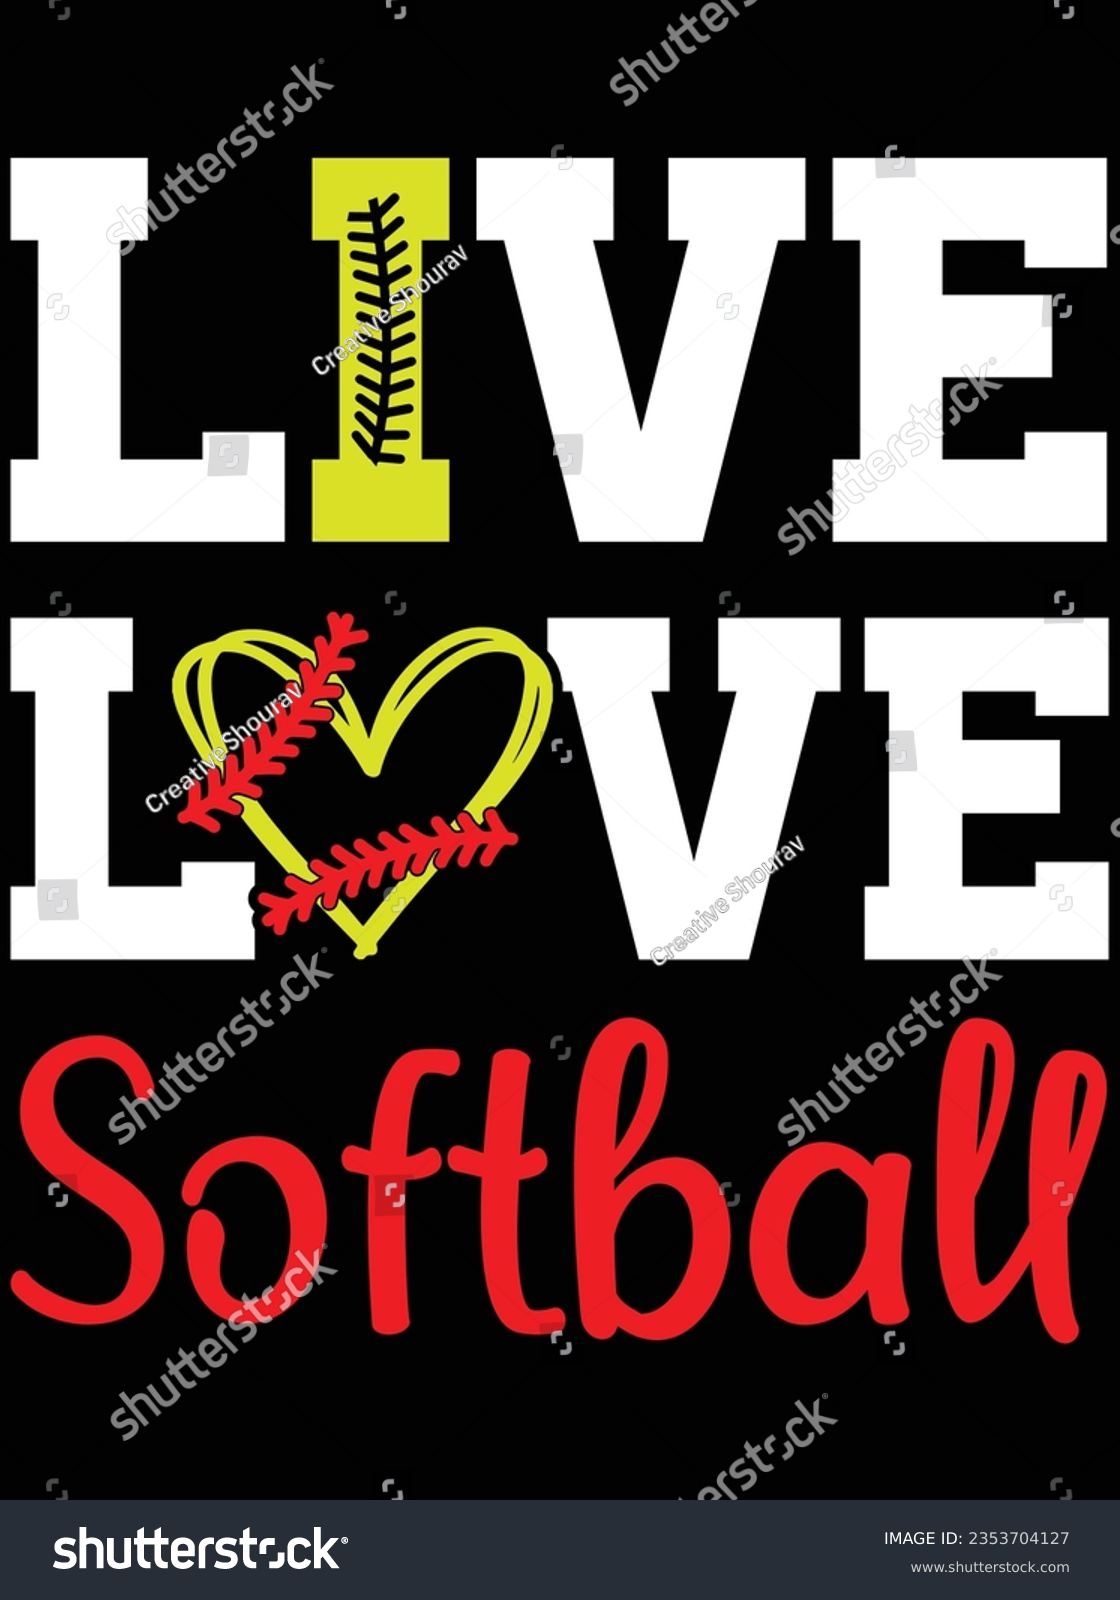 SVG of Live love softball vector art design, eps file. design file for t-shirt. SVG, EPS cuttable design file svg